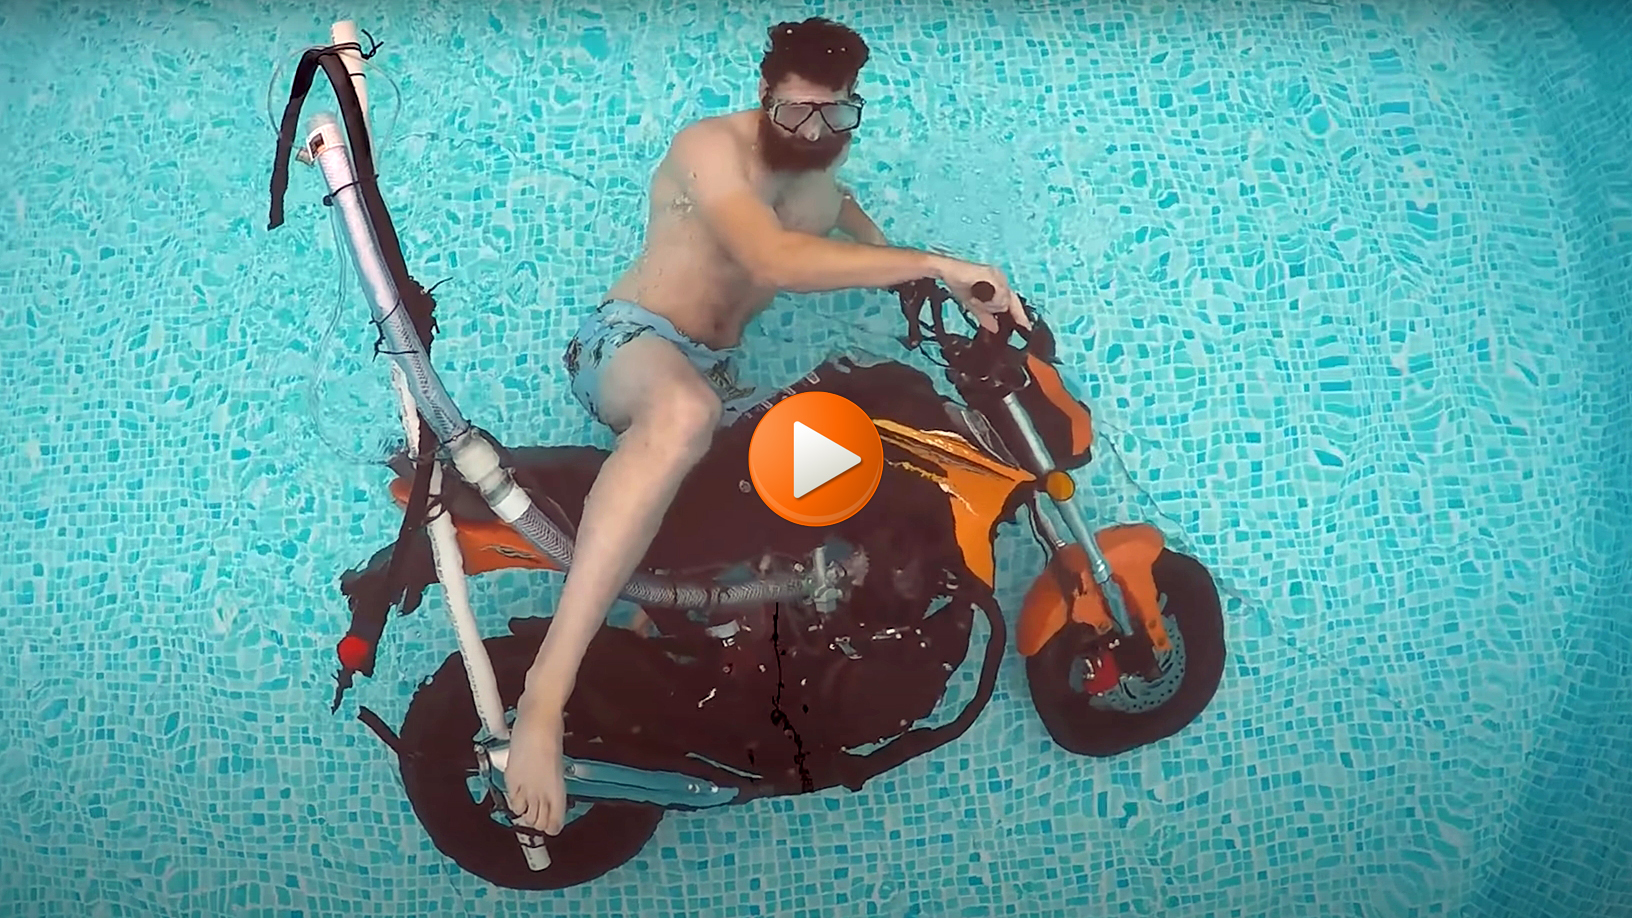 motocykl pod woda z